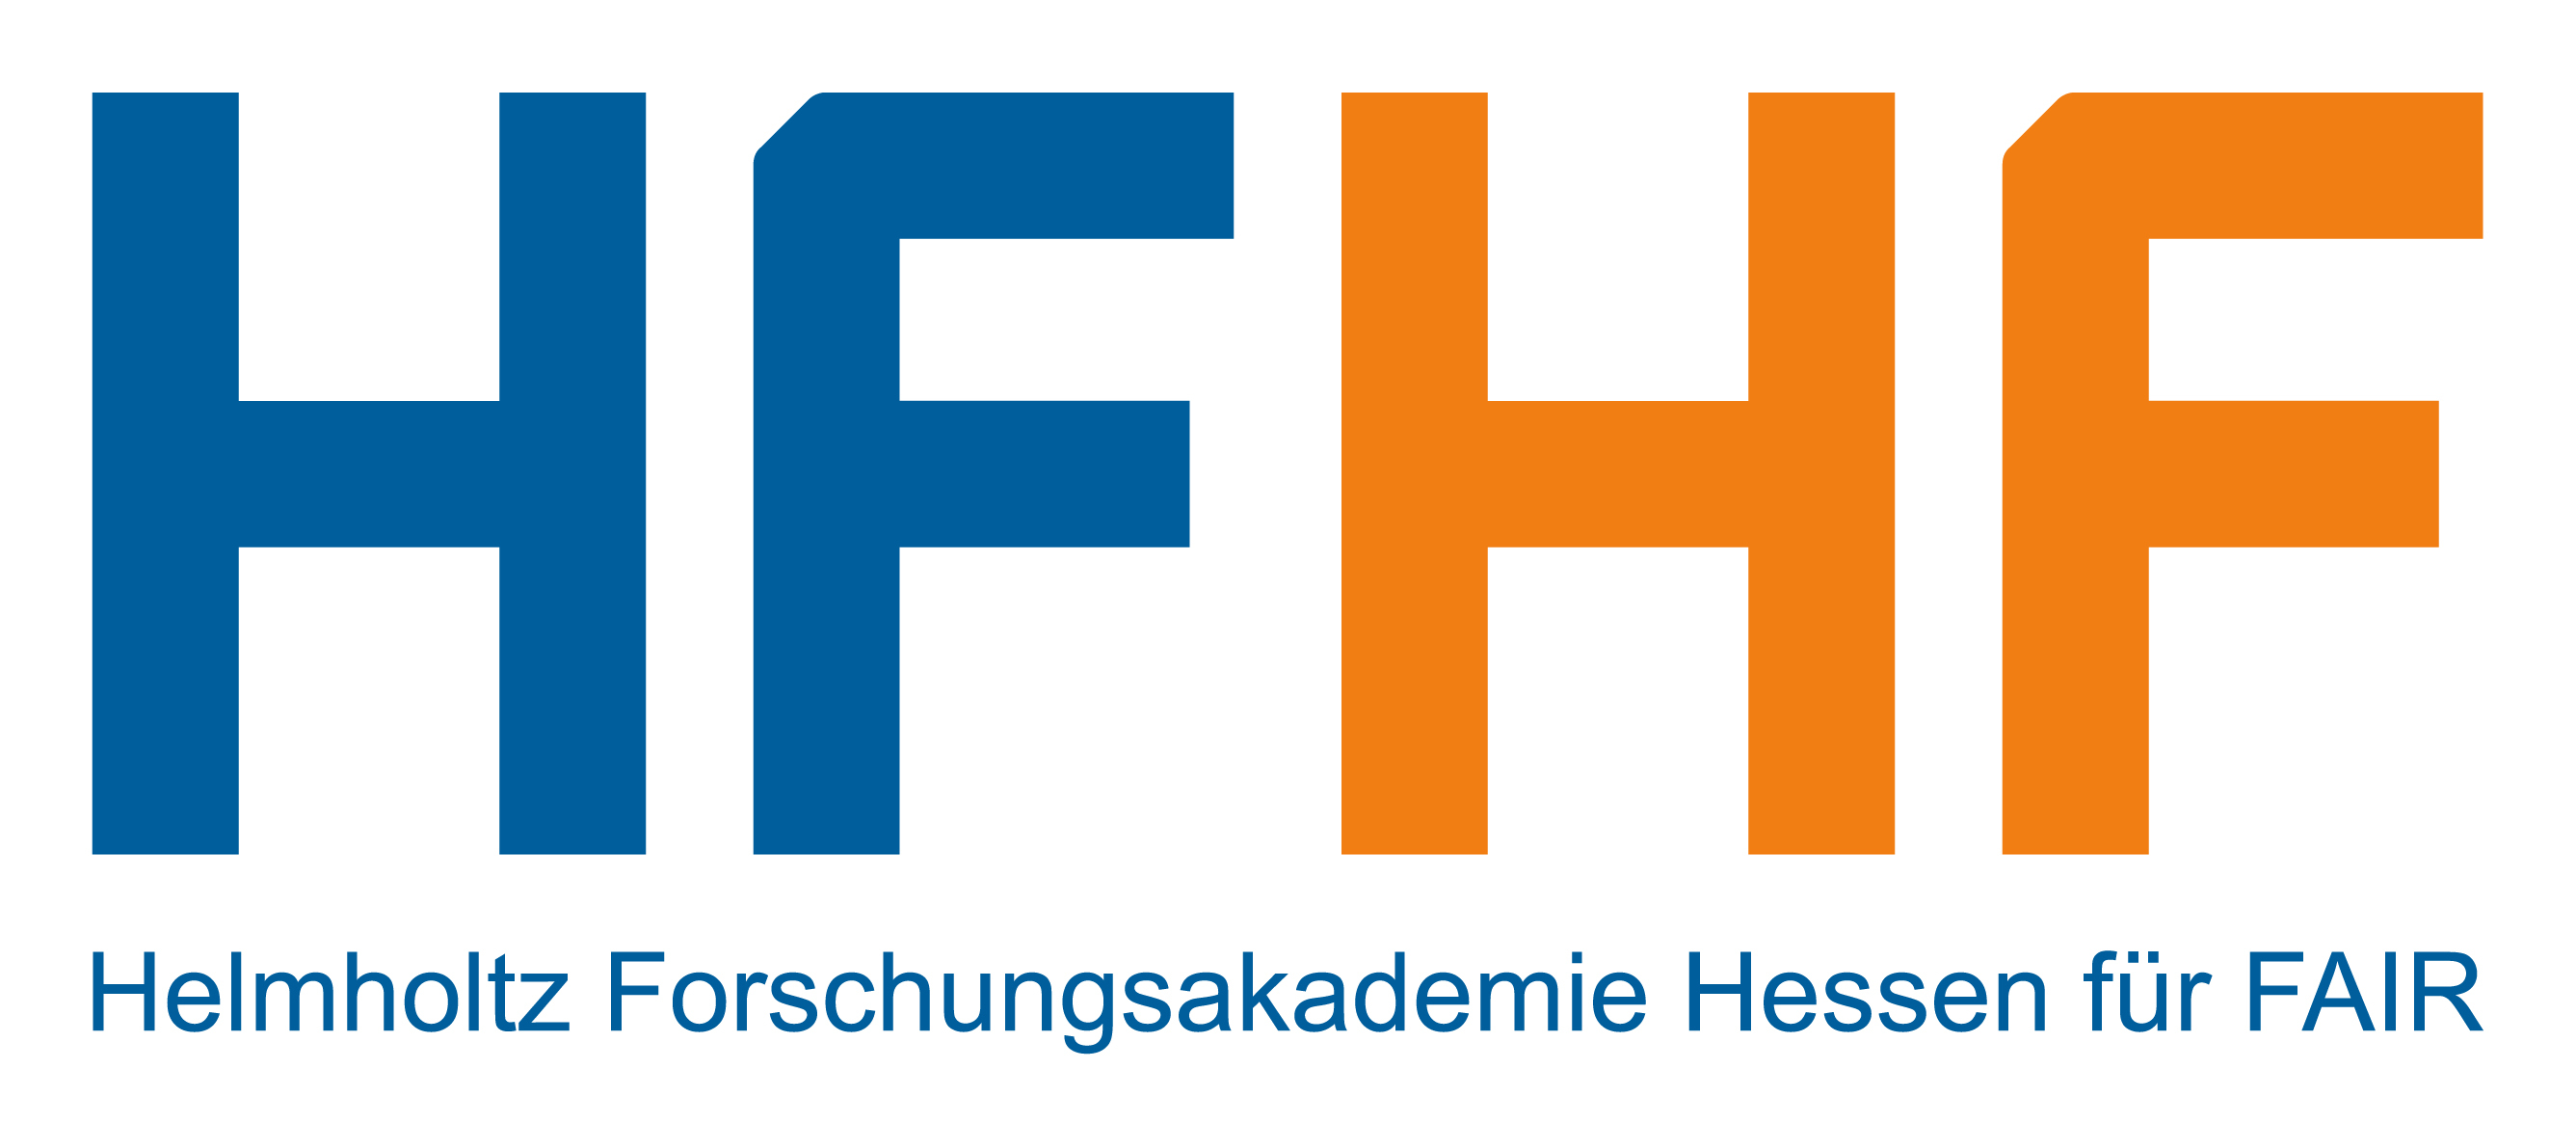 Helmholtz Forschungsakademie Hessen for FAIR